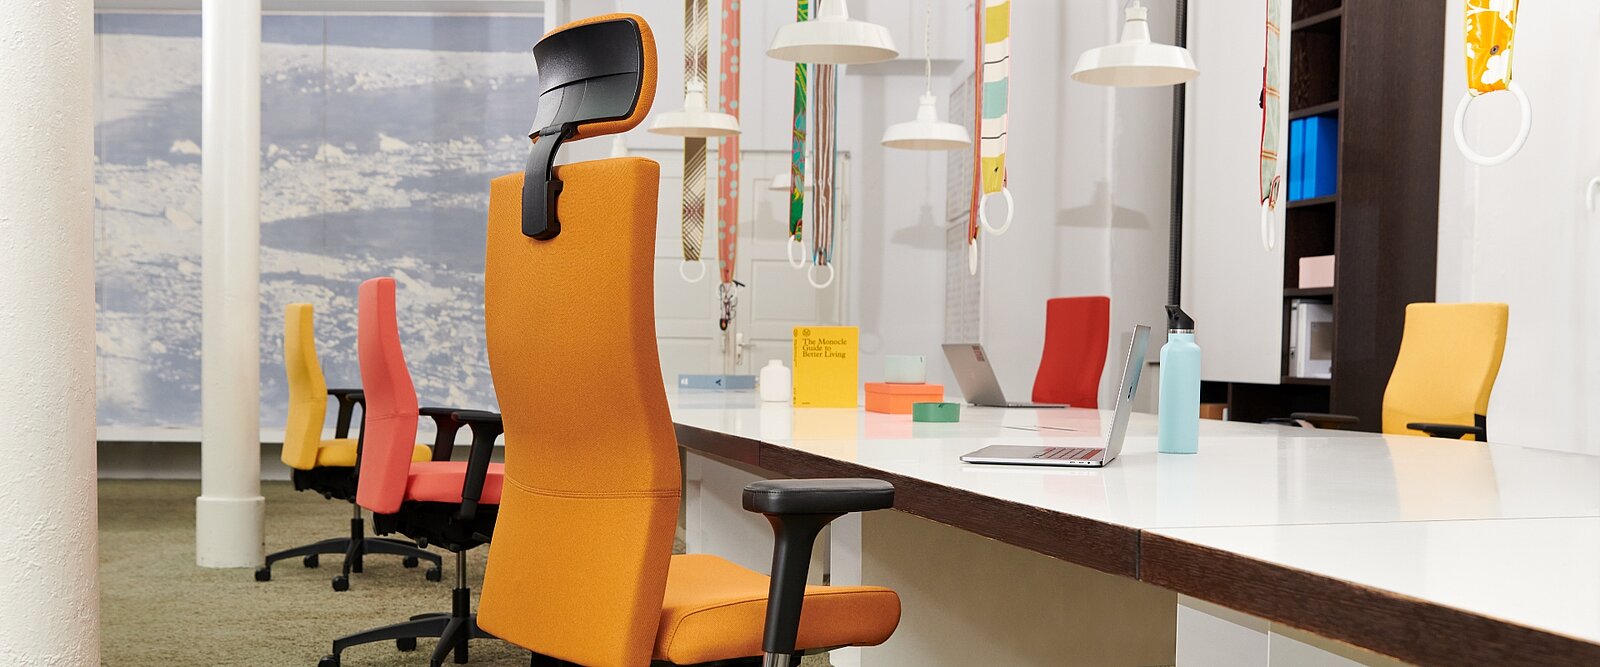 Met hun aantrekkelijke, markante look bieden de rondom gestoffeerde bureaustoelen frisse impulsen voor een energieke werkdag. (Shape XE)